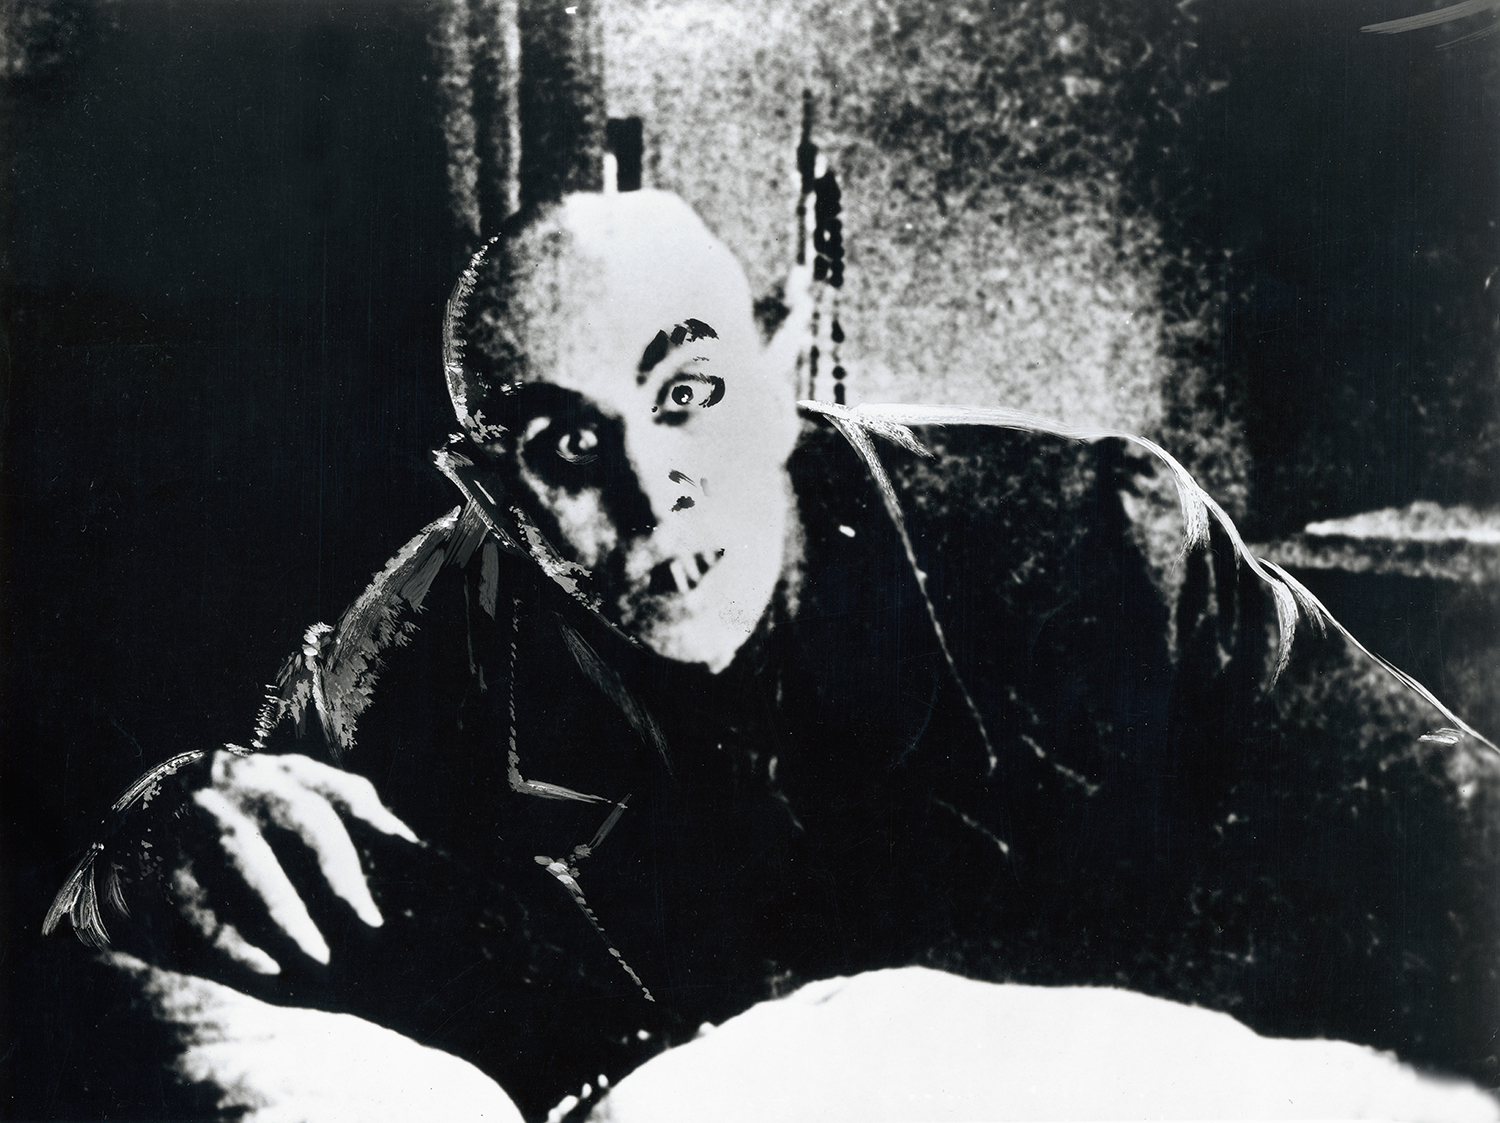 Max Schreck as Count Orlok in Nosferatu